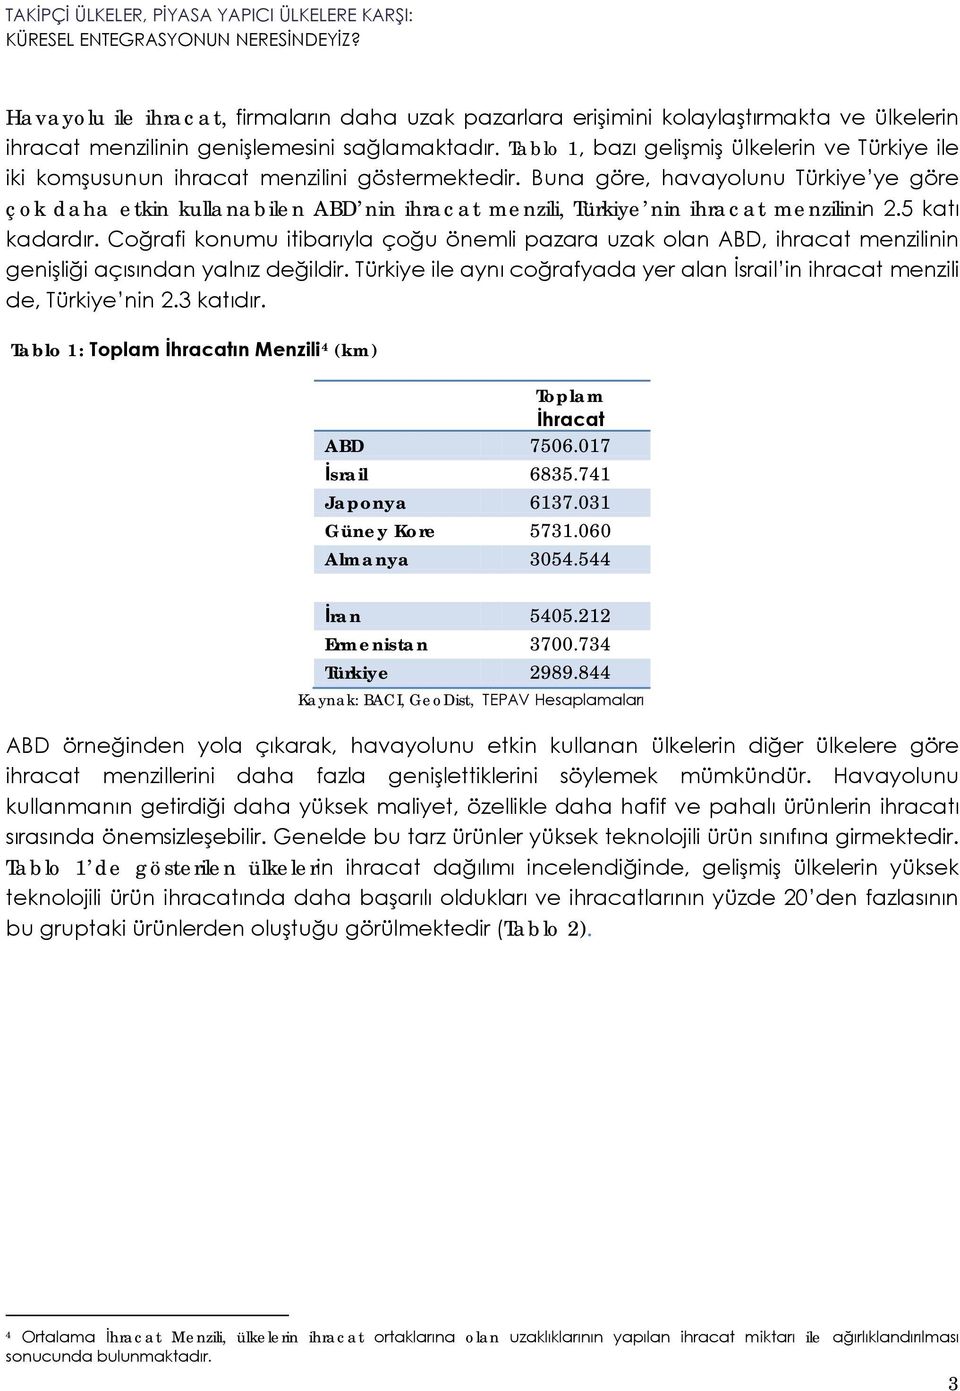 Buna göre, havayolunu Türkiye ye göre çok daha etkin kullanabilen ABD nin ihracat menzili, Türkiye nin ihracat menzilinin 2.5 katı kadardır.